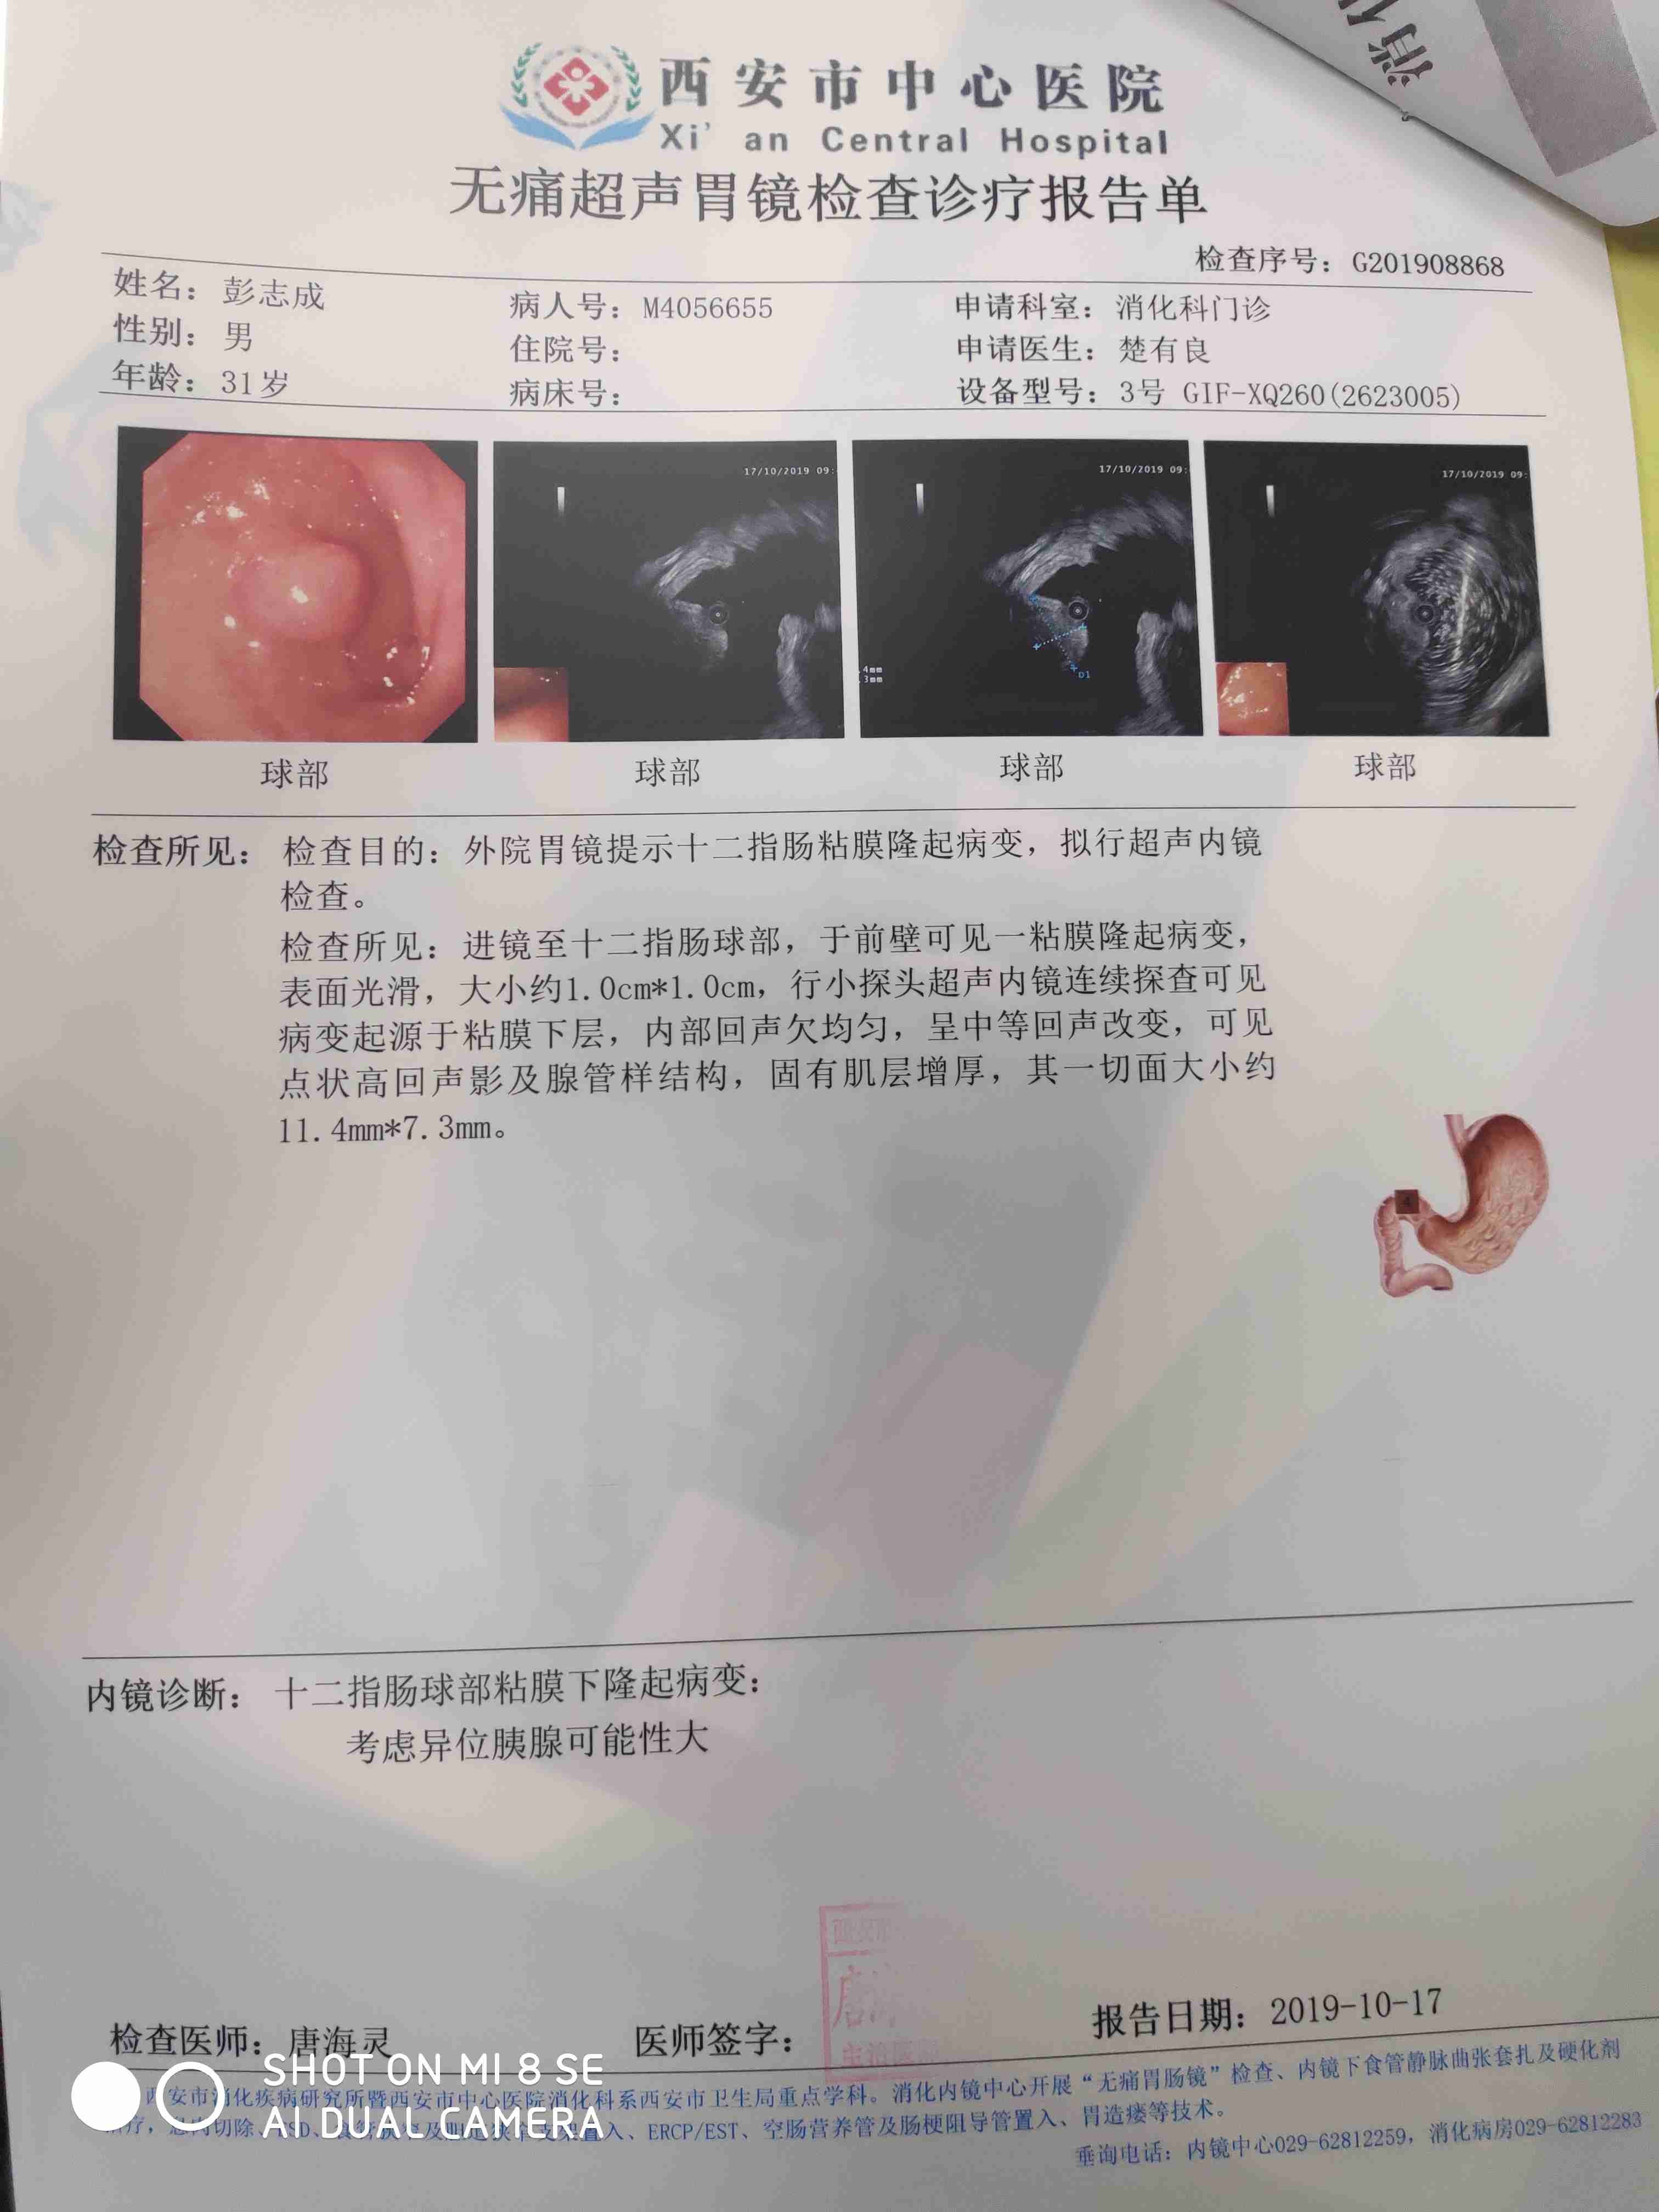 病情描述:你好,我的超声胃镜检查结果是十二指肠球部粘膜下隆起,考虑